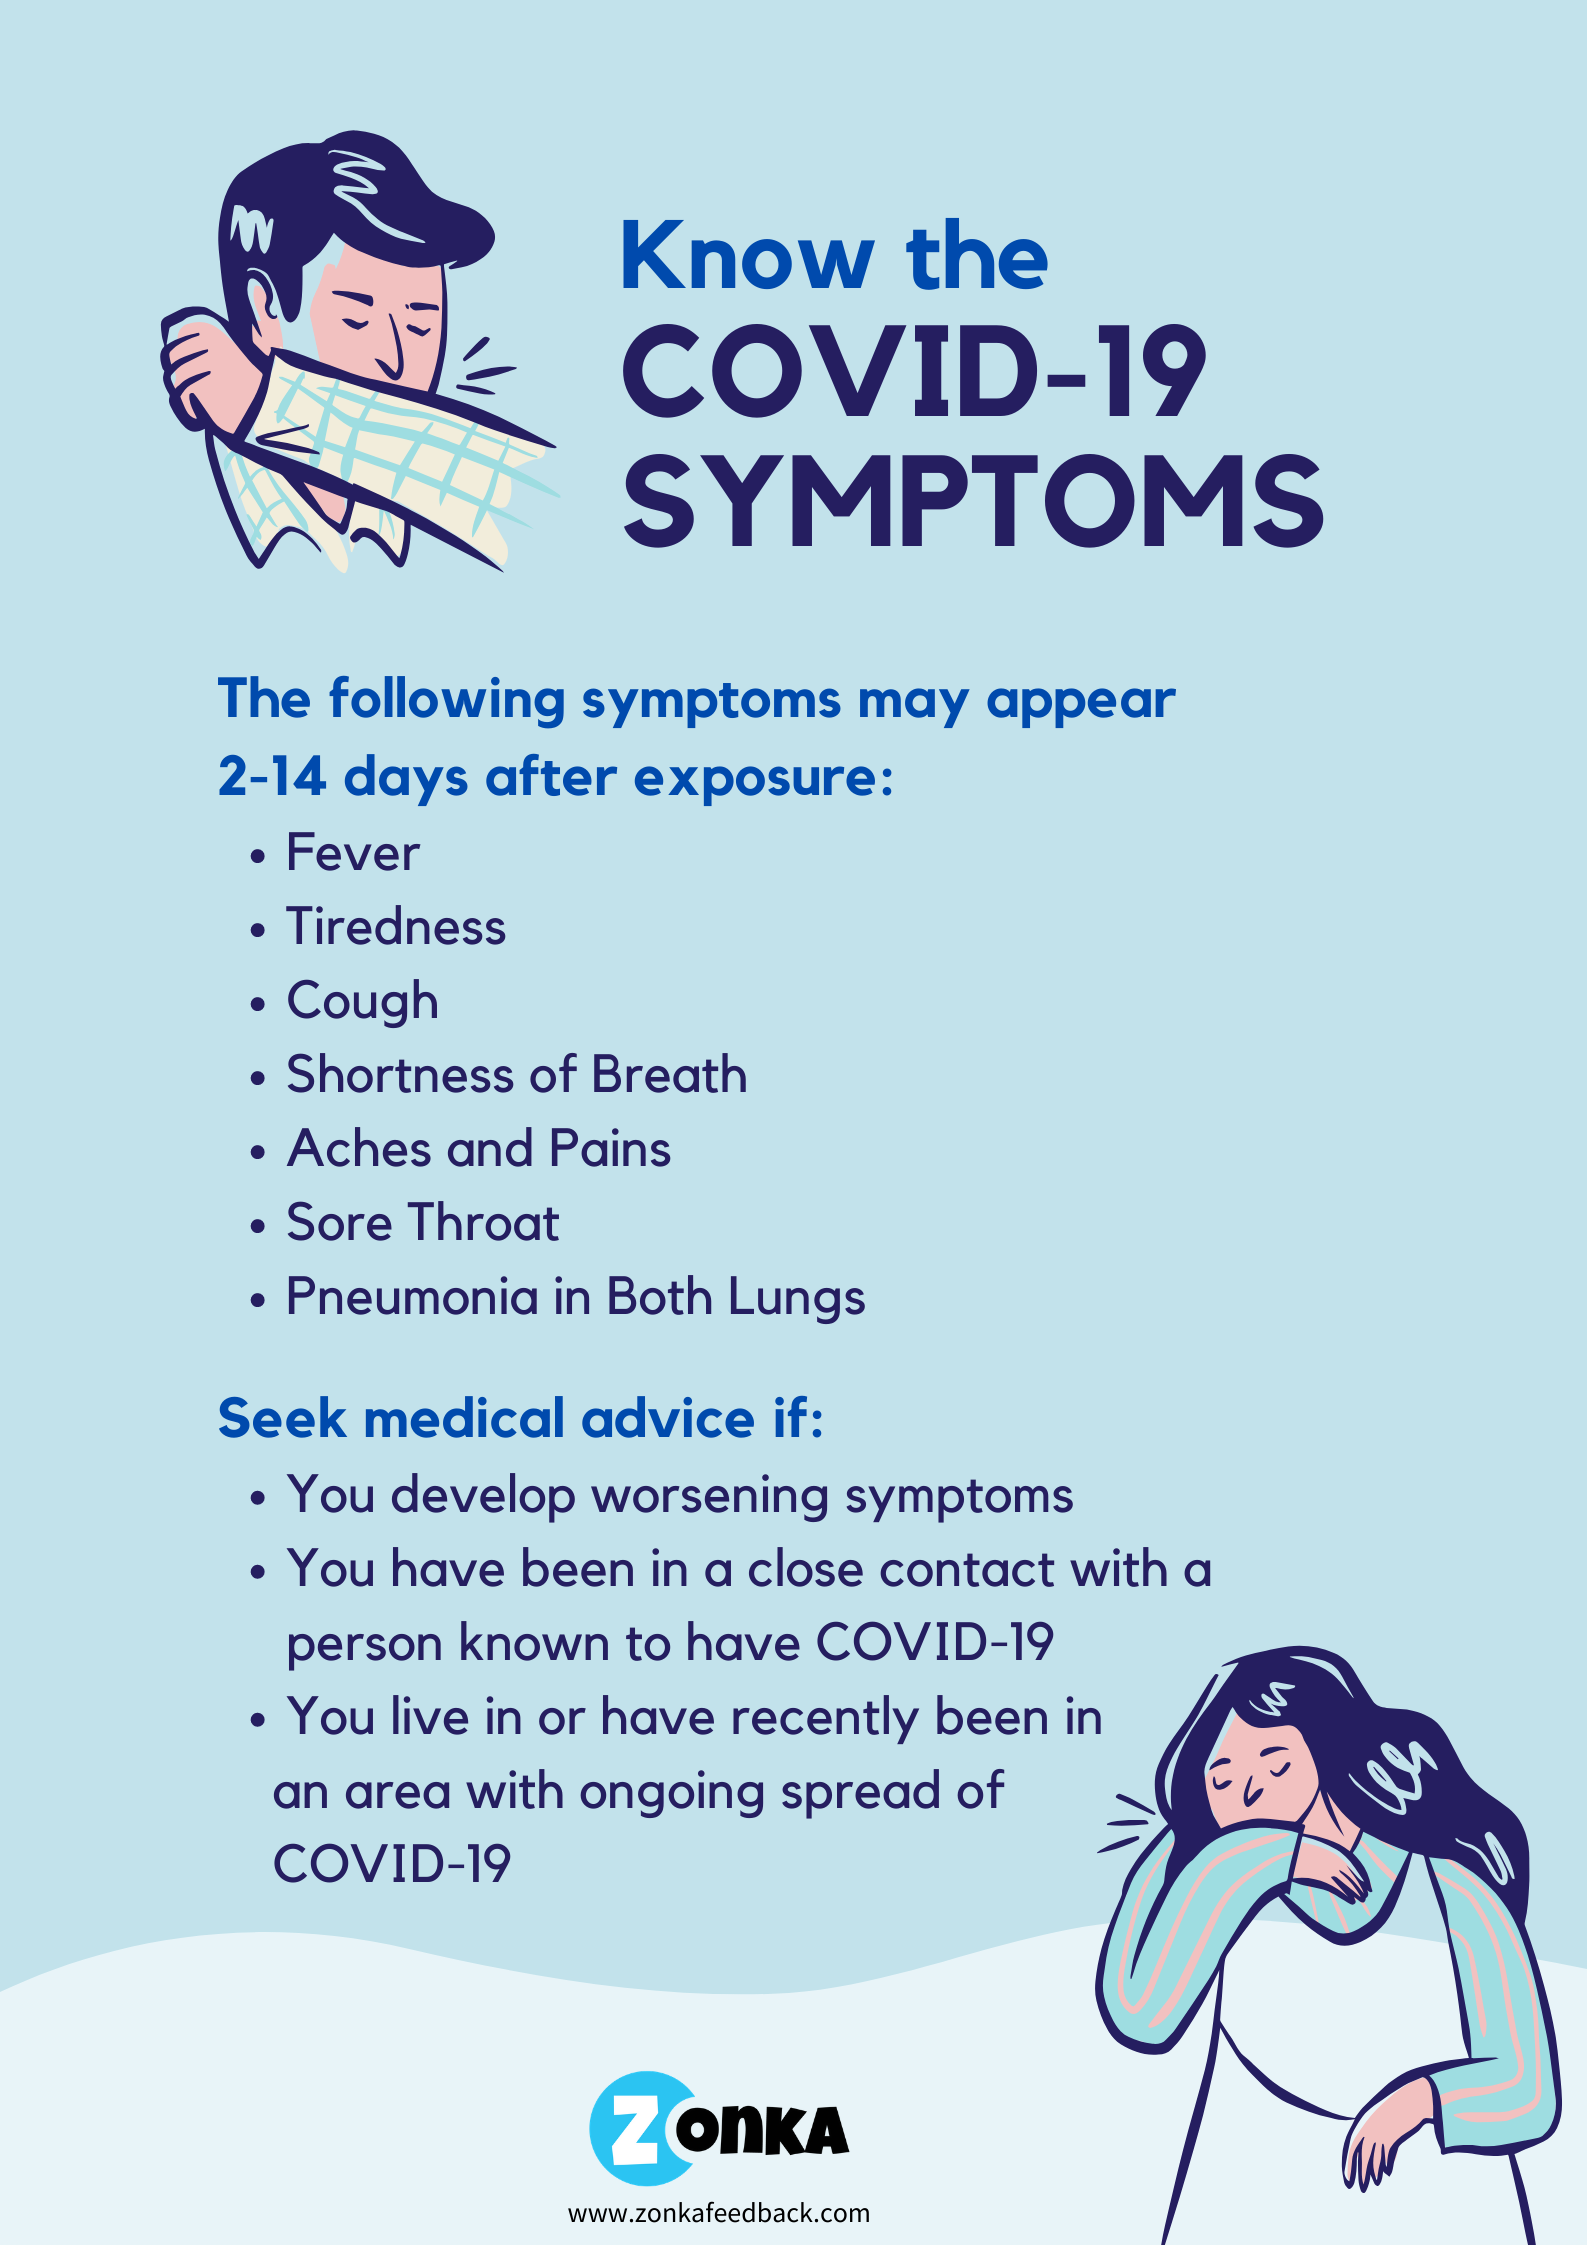 symptoms of covid